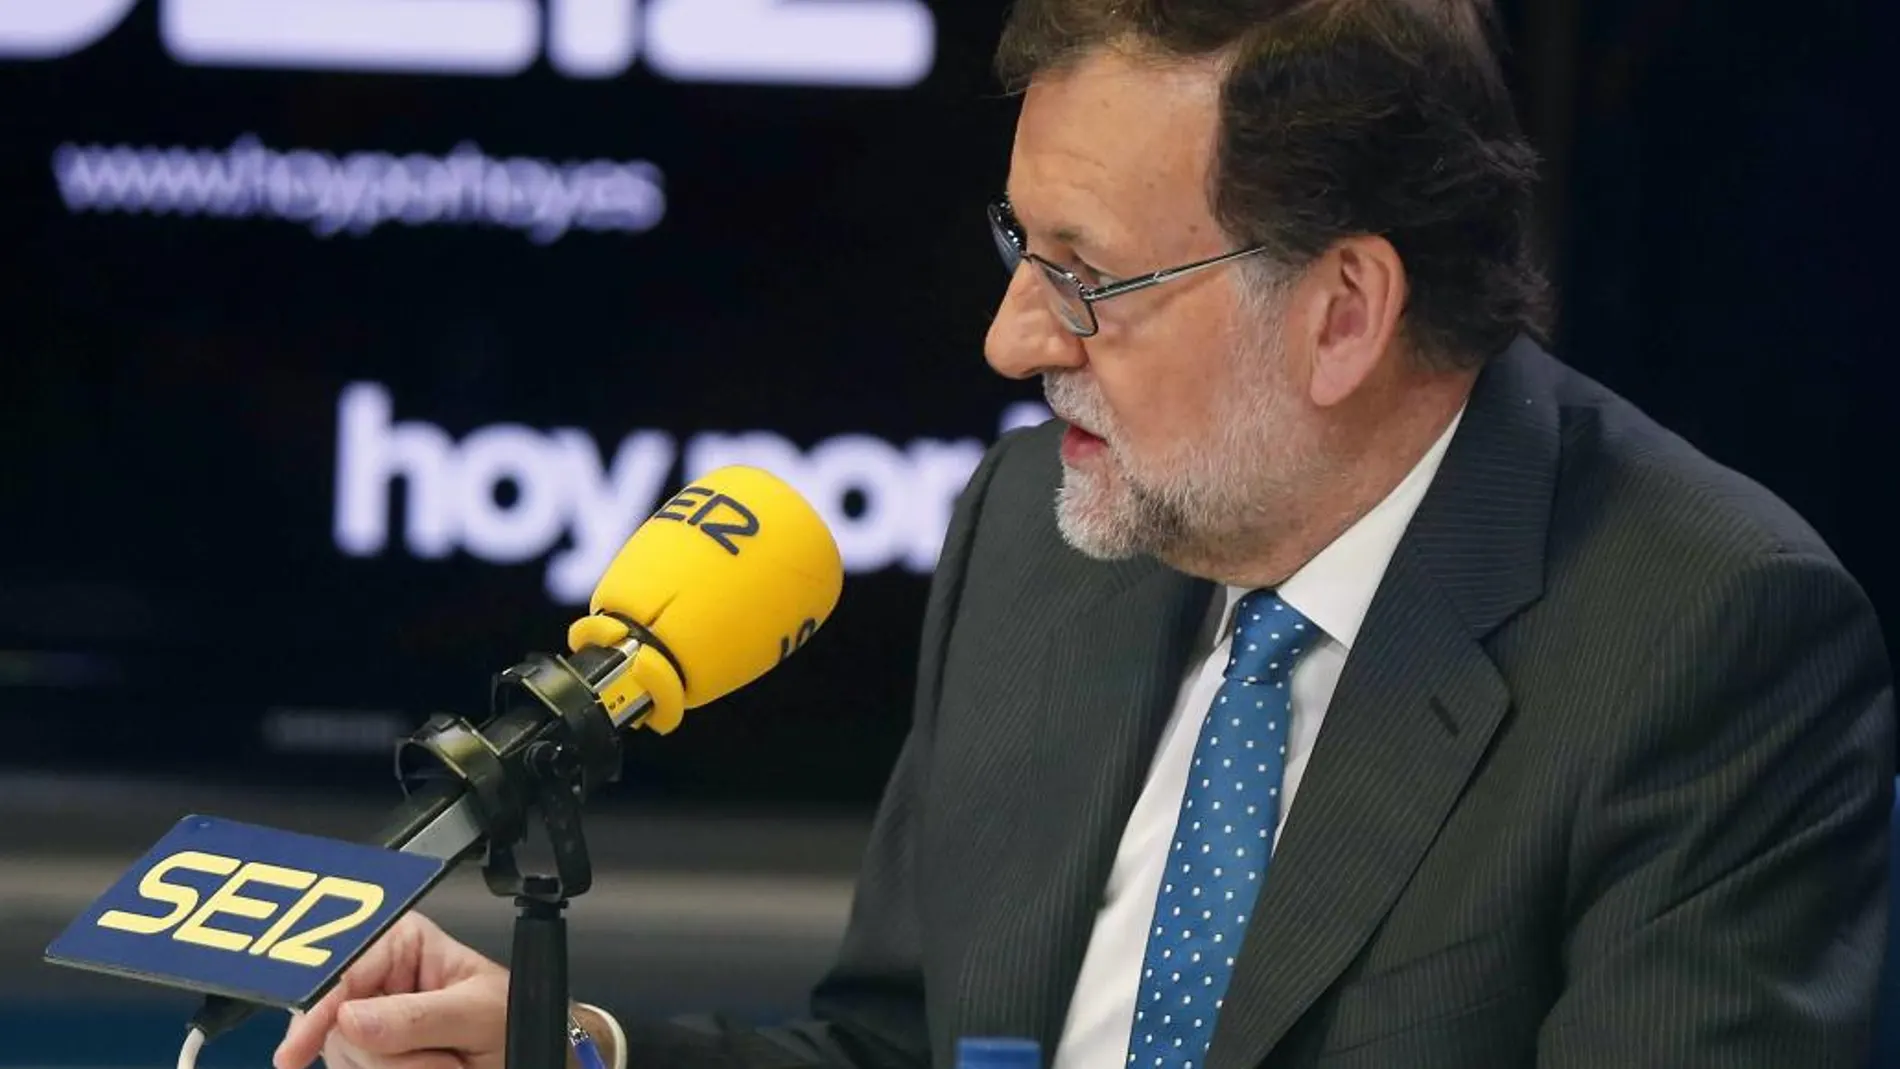 El presidente del Gobierno en funciones, Mariano Rajoy, durante la entrevista que ha ofrecido hoy en el progarma "Hoy por hoy", de la Cadena Ser